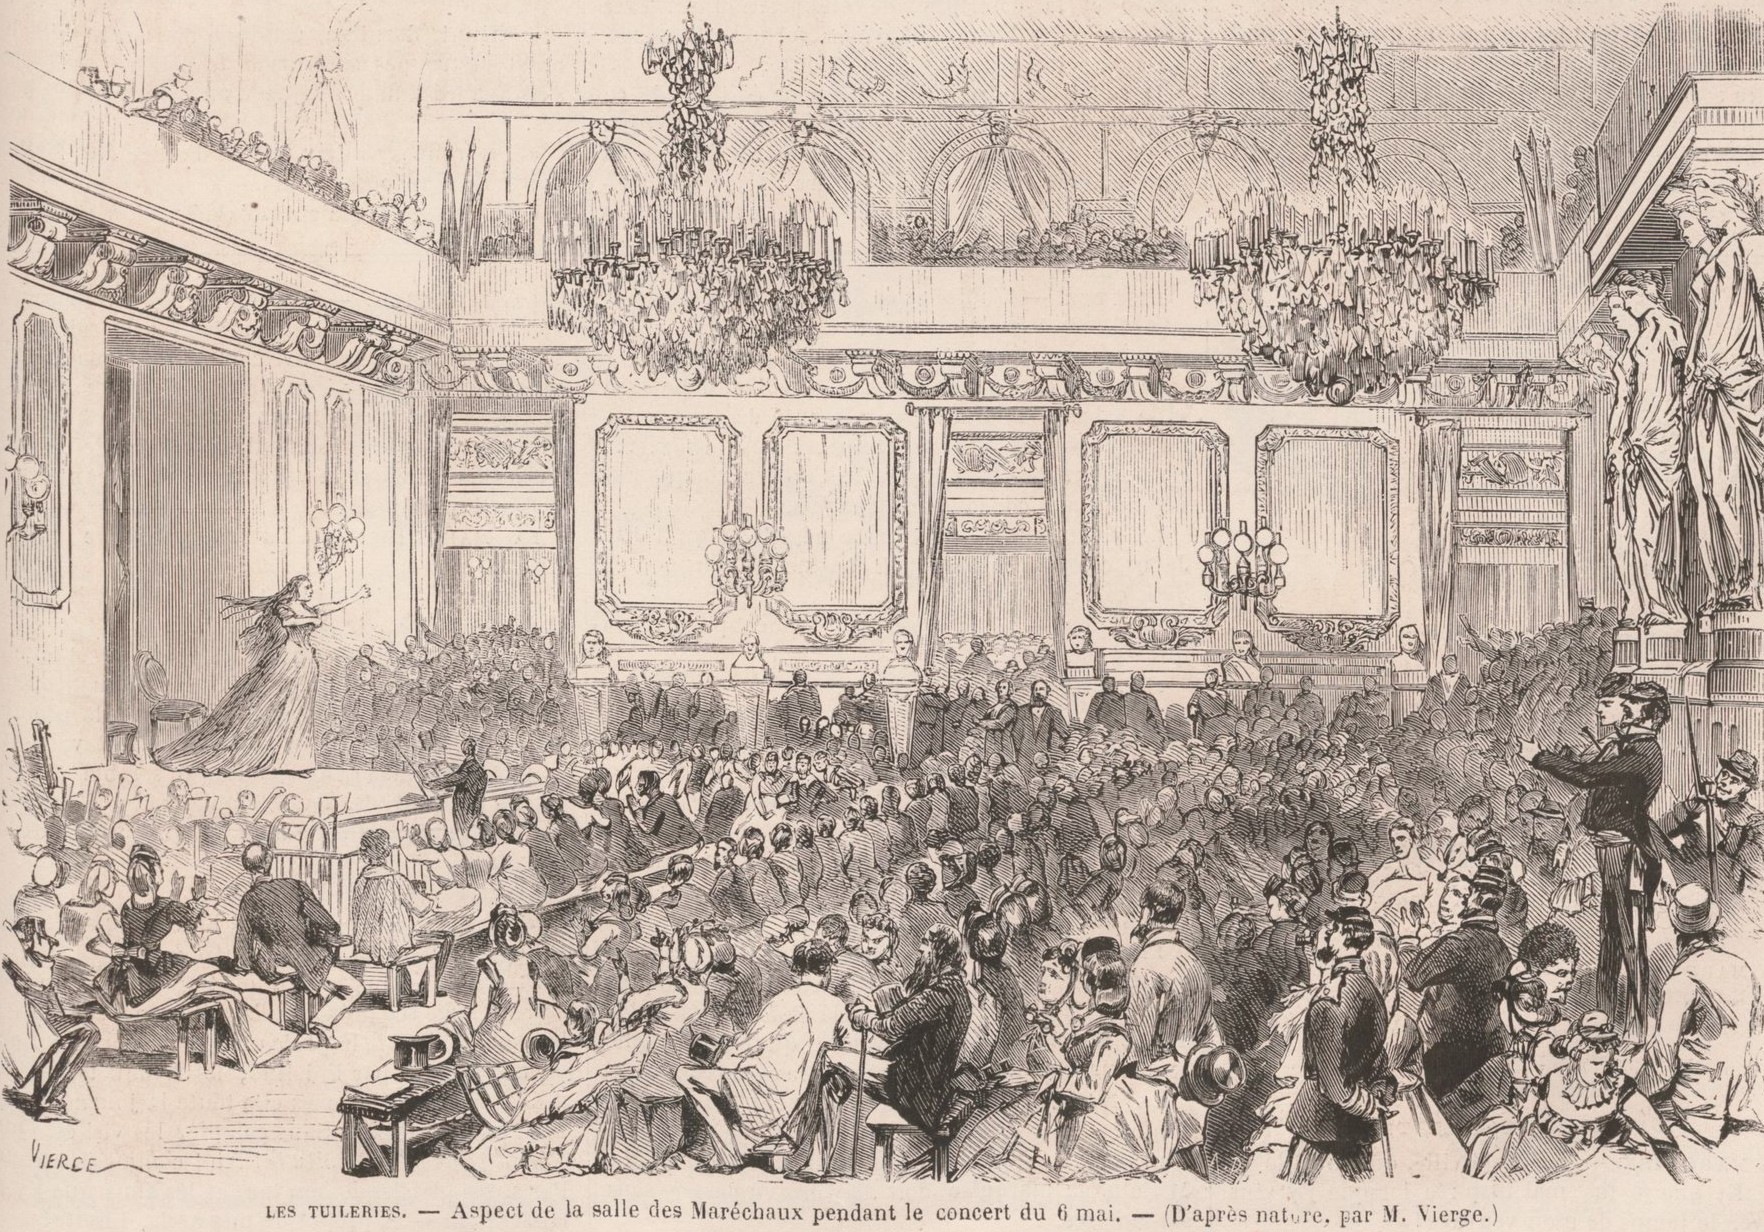 6 mai 1871, concert aux Palais des Tuileries, salle des Maréchaux - Dessin de Vierge (Le Monde Illustré mai 1871)